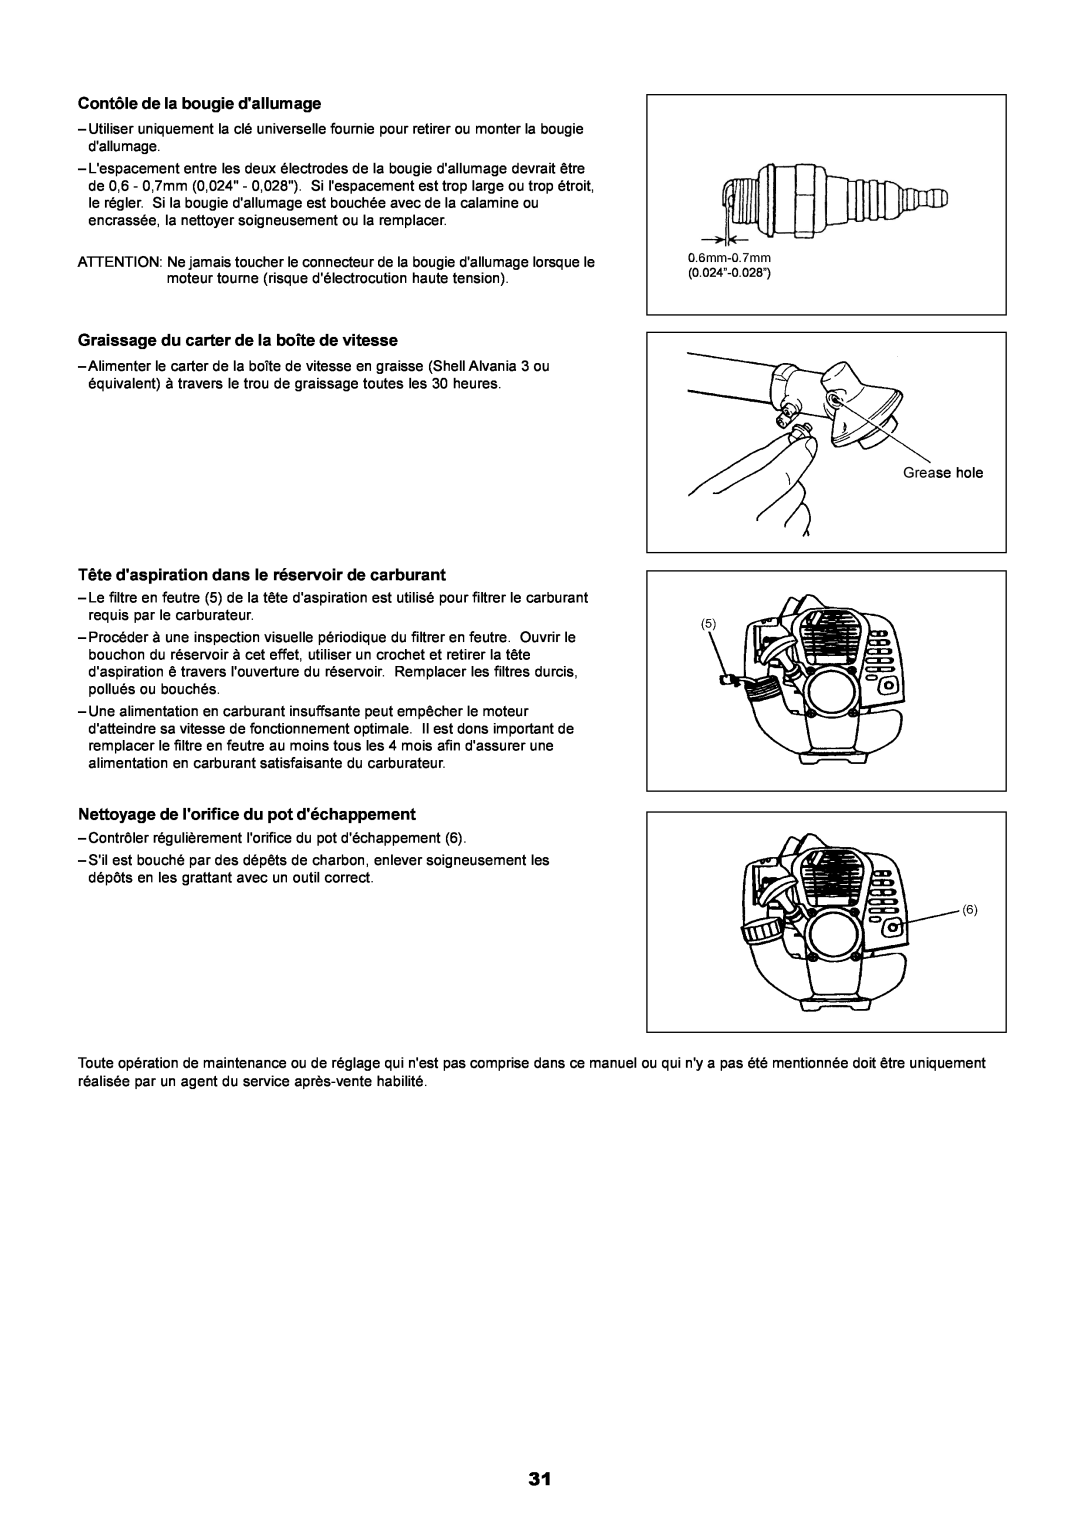 Dolmar PE-251 instruction manual Contôle de la bougie dallumage, Graissage du carter de la boîte de vitesse 